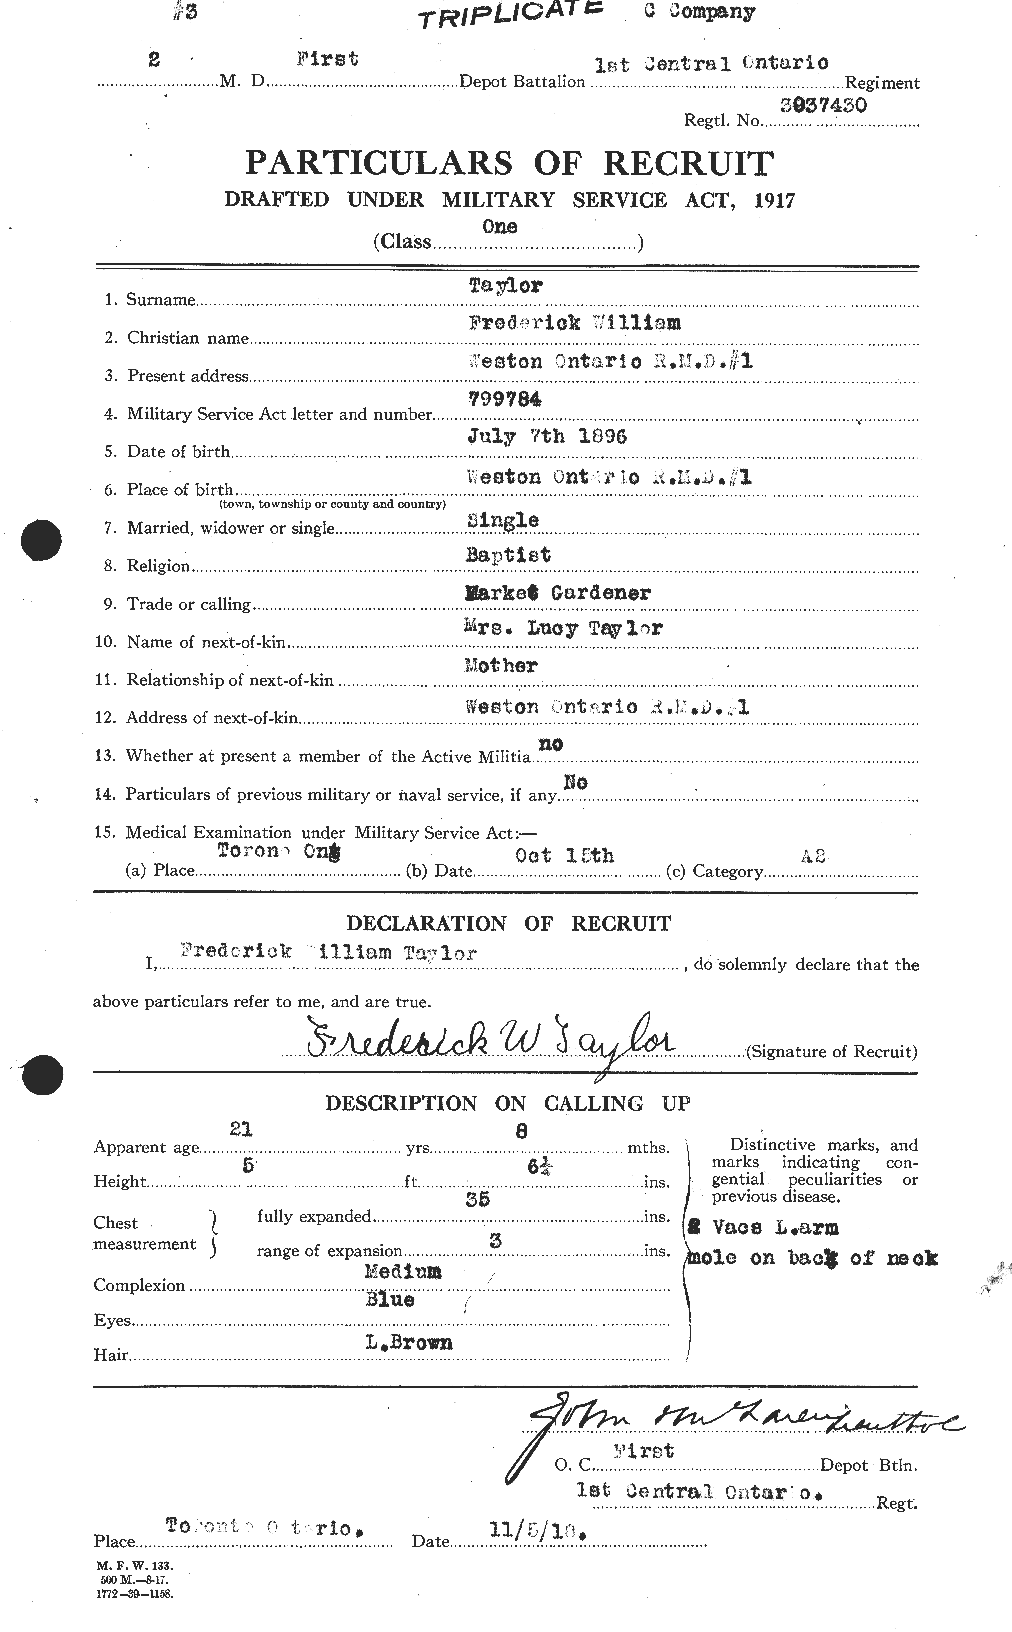 Dossiers du Personnel de la Première Guerre mondiale - CEC 625827a